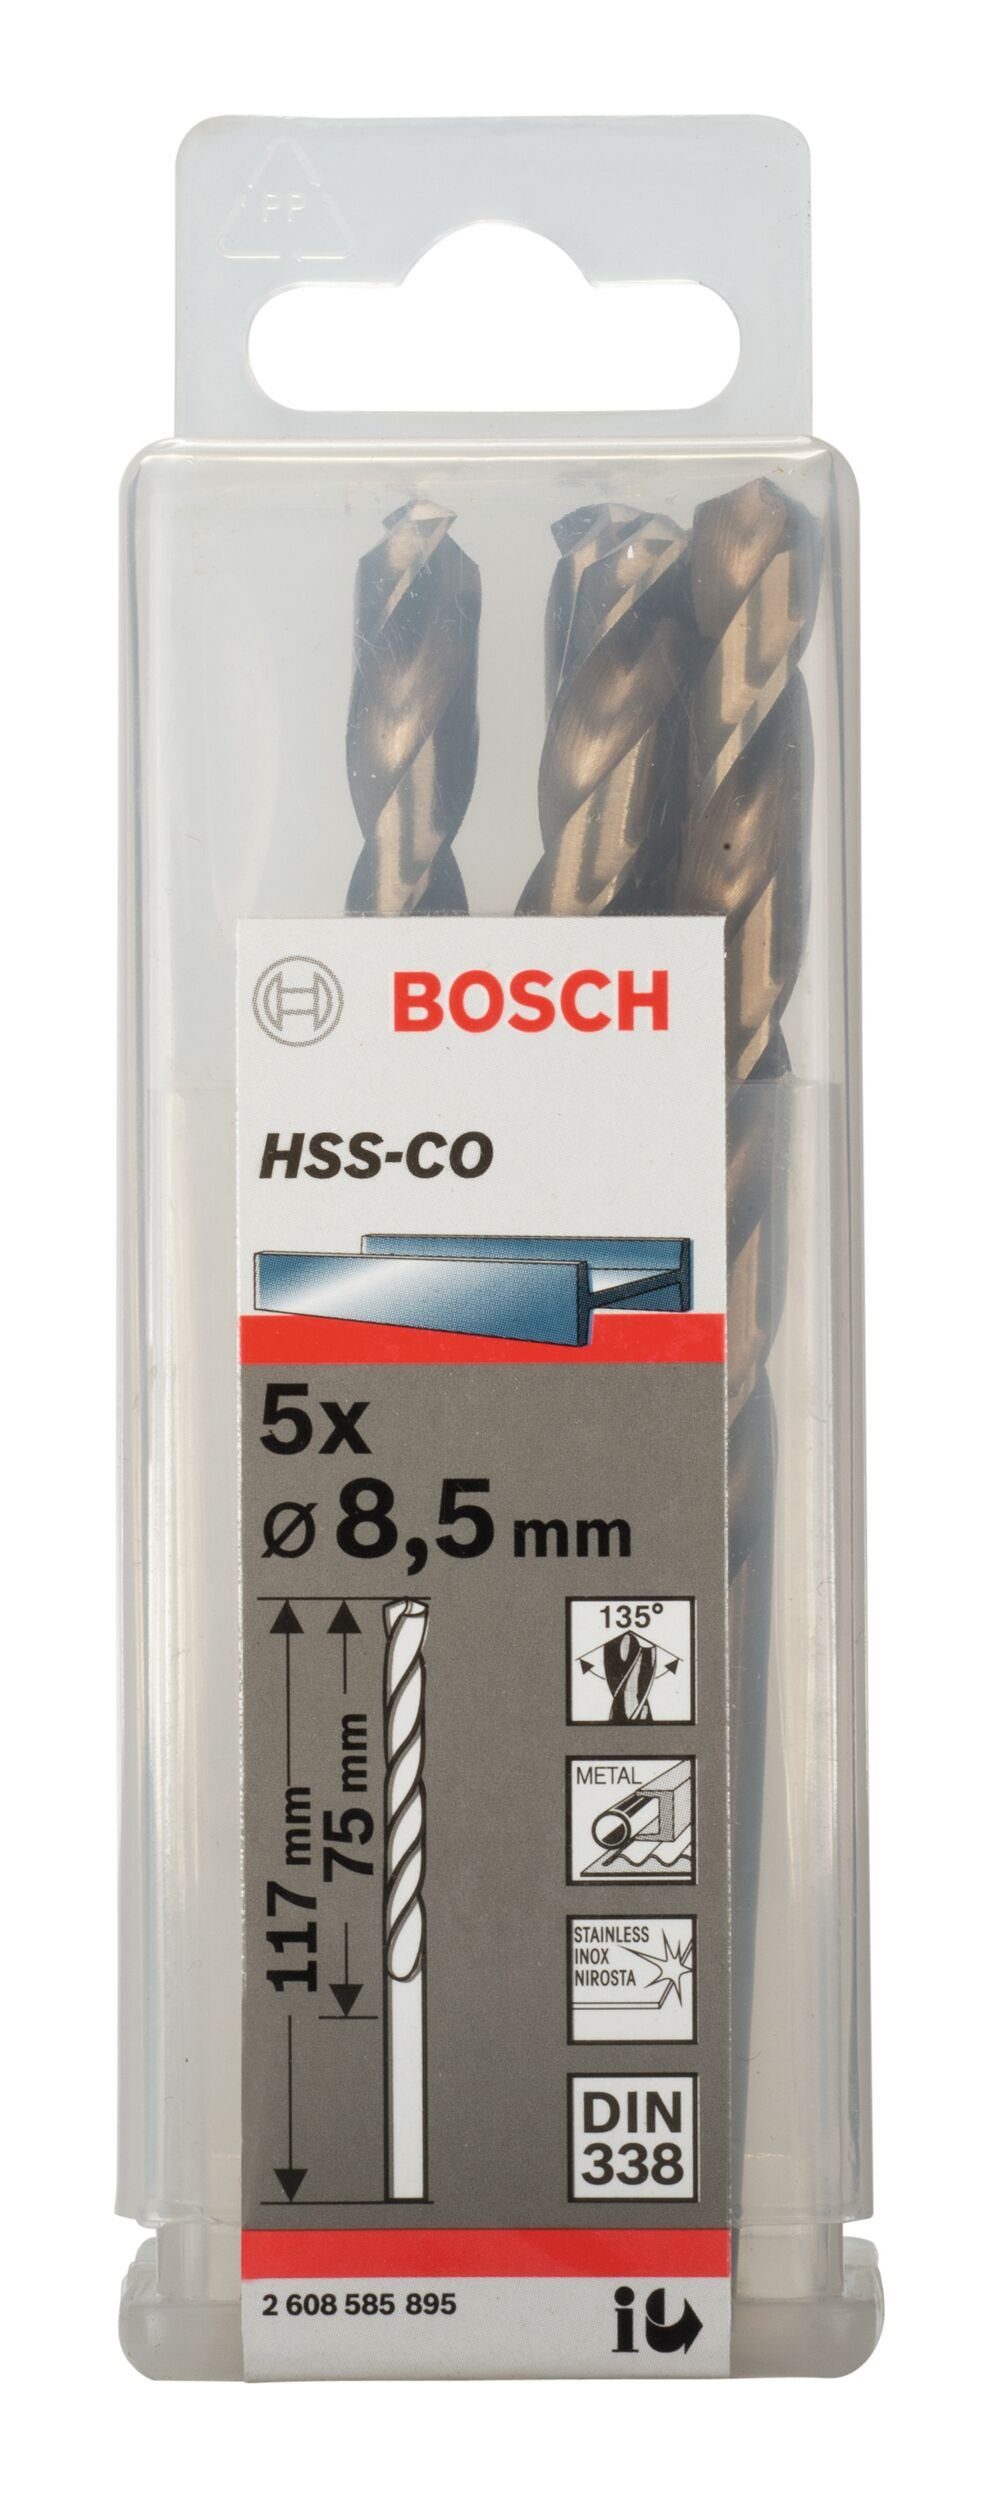 HSS-Co 75 - BOSCH - (5 Metallbohrer, x mm 338) 117 8,5 5er-Pack (DIN Stück), x